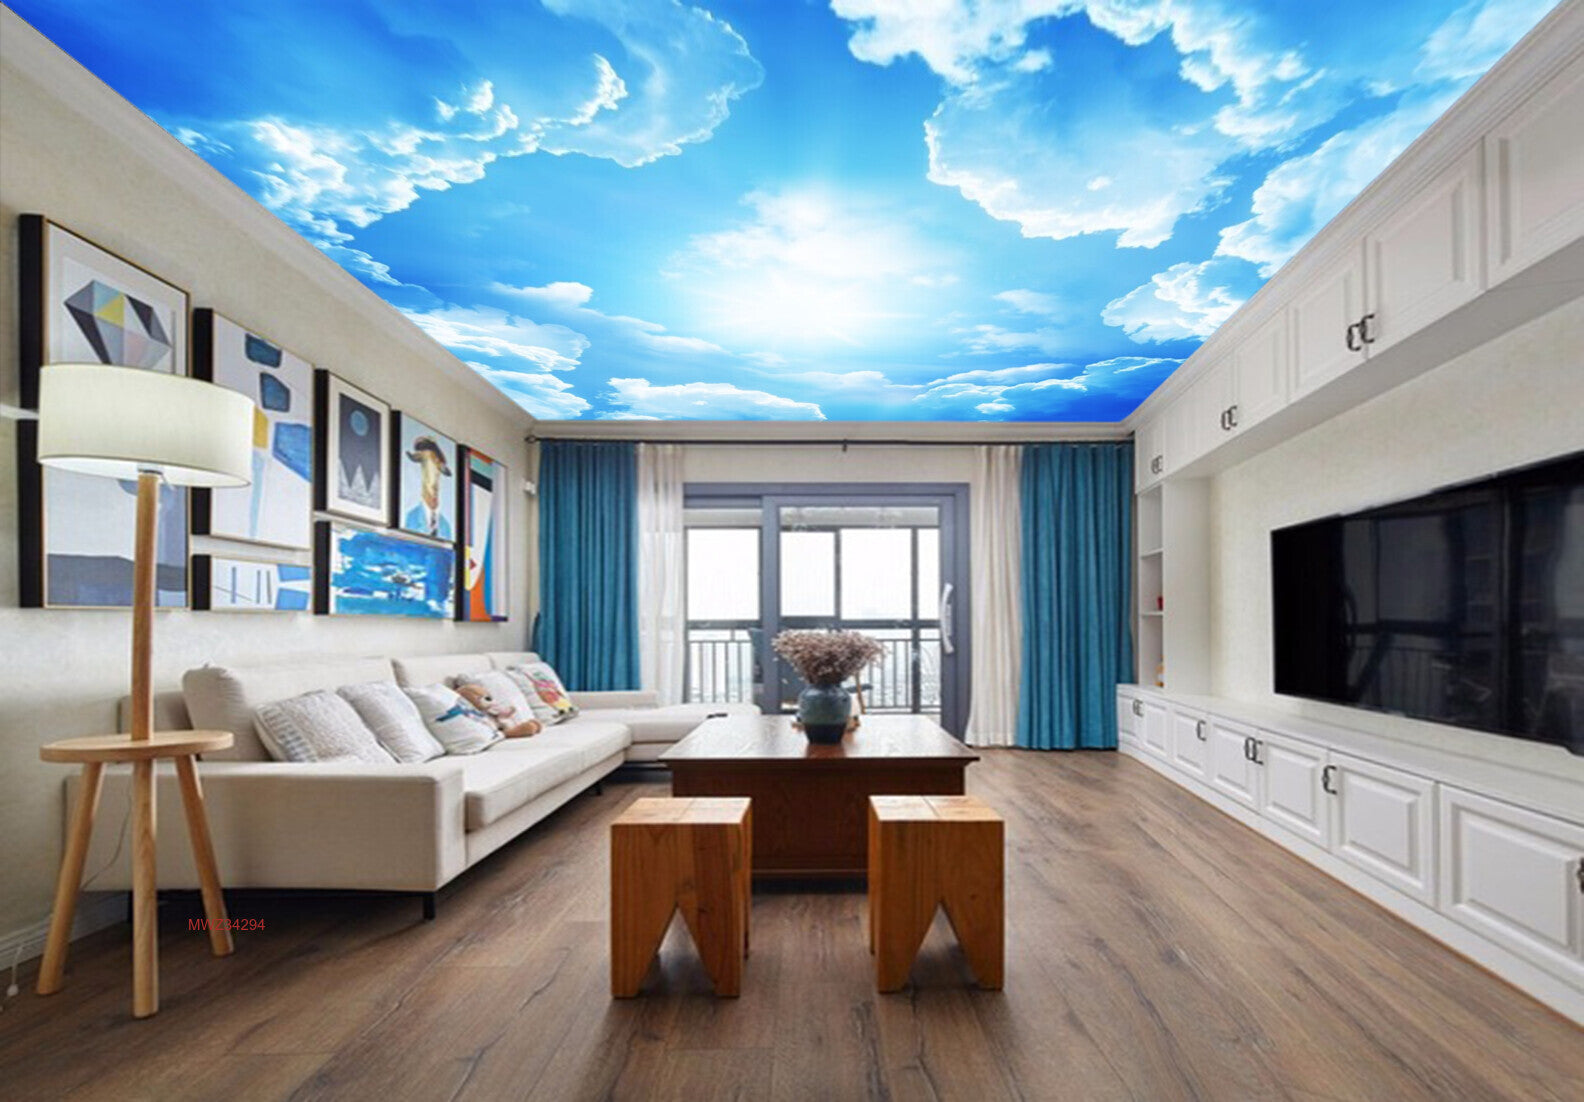 Avikalp MWZ3429 Clouds Sun Sky HD Wallpaper for Ceiling